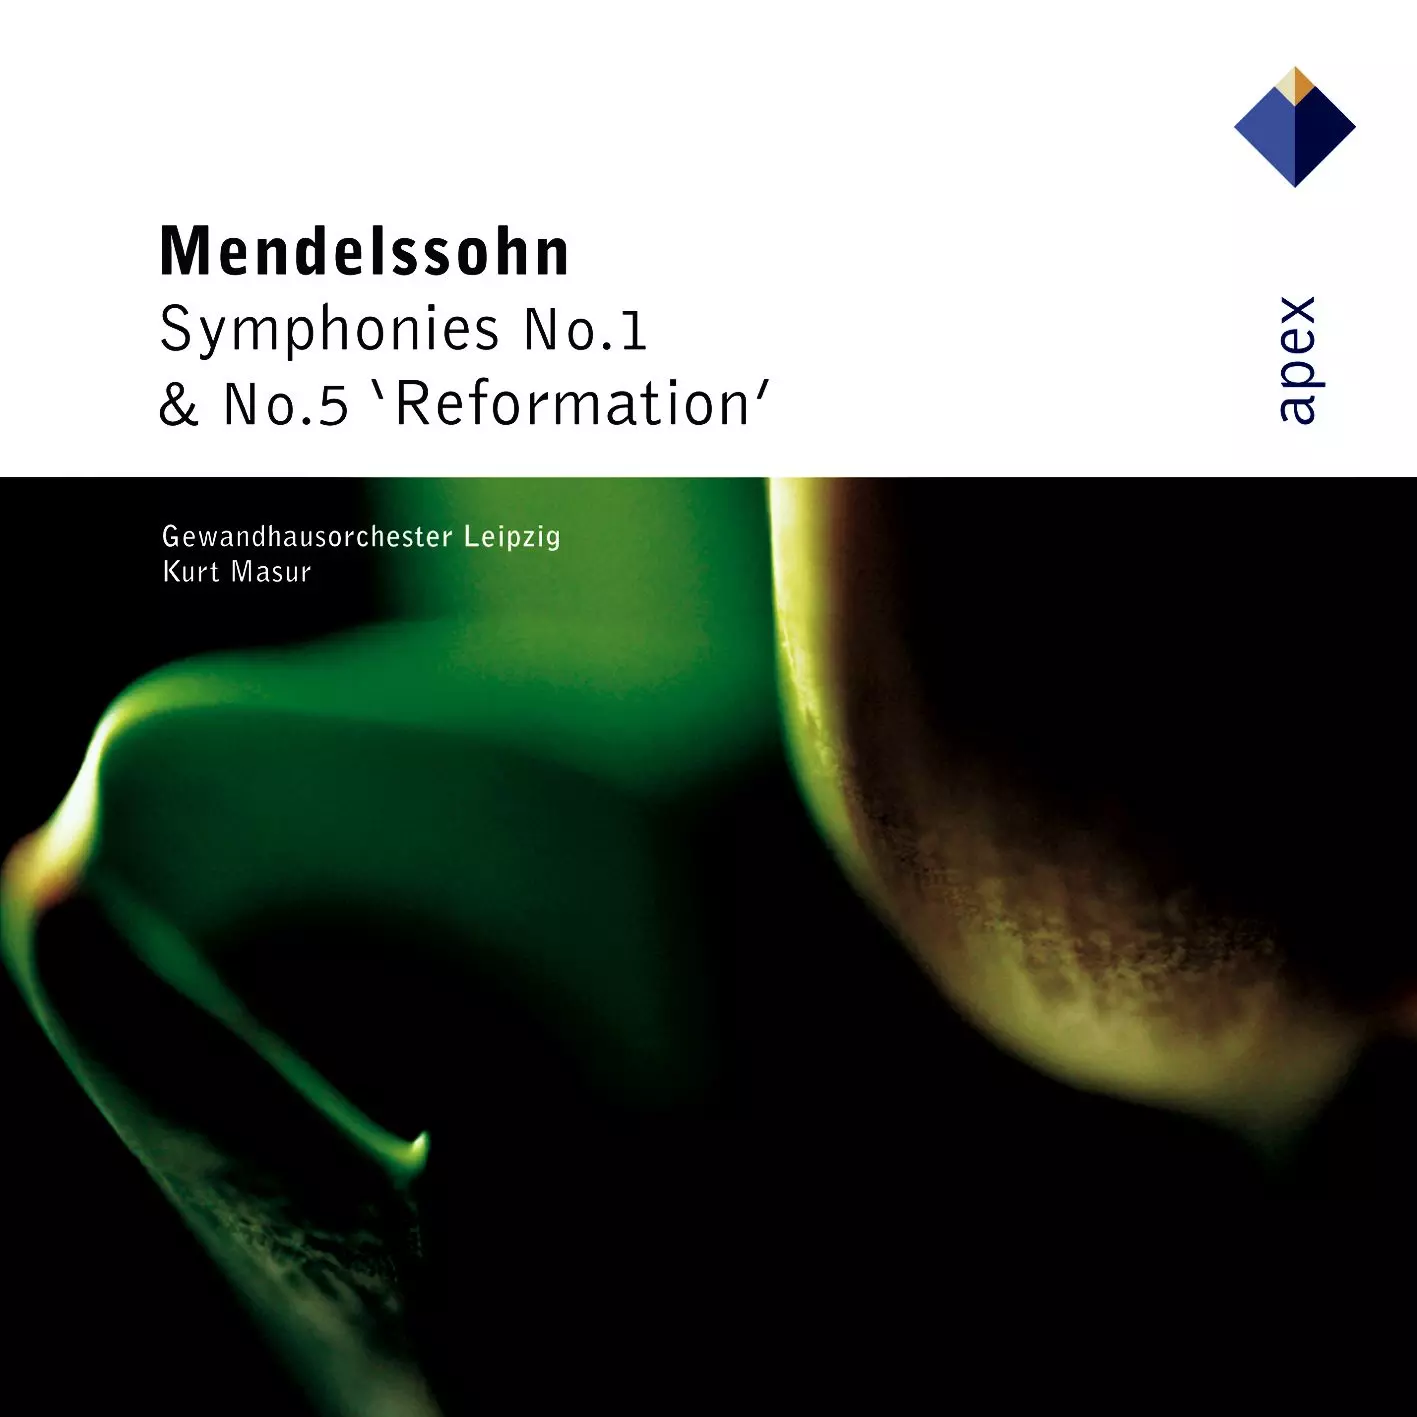 Mendelssohn: Symphonies No. 1 & 5